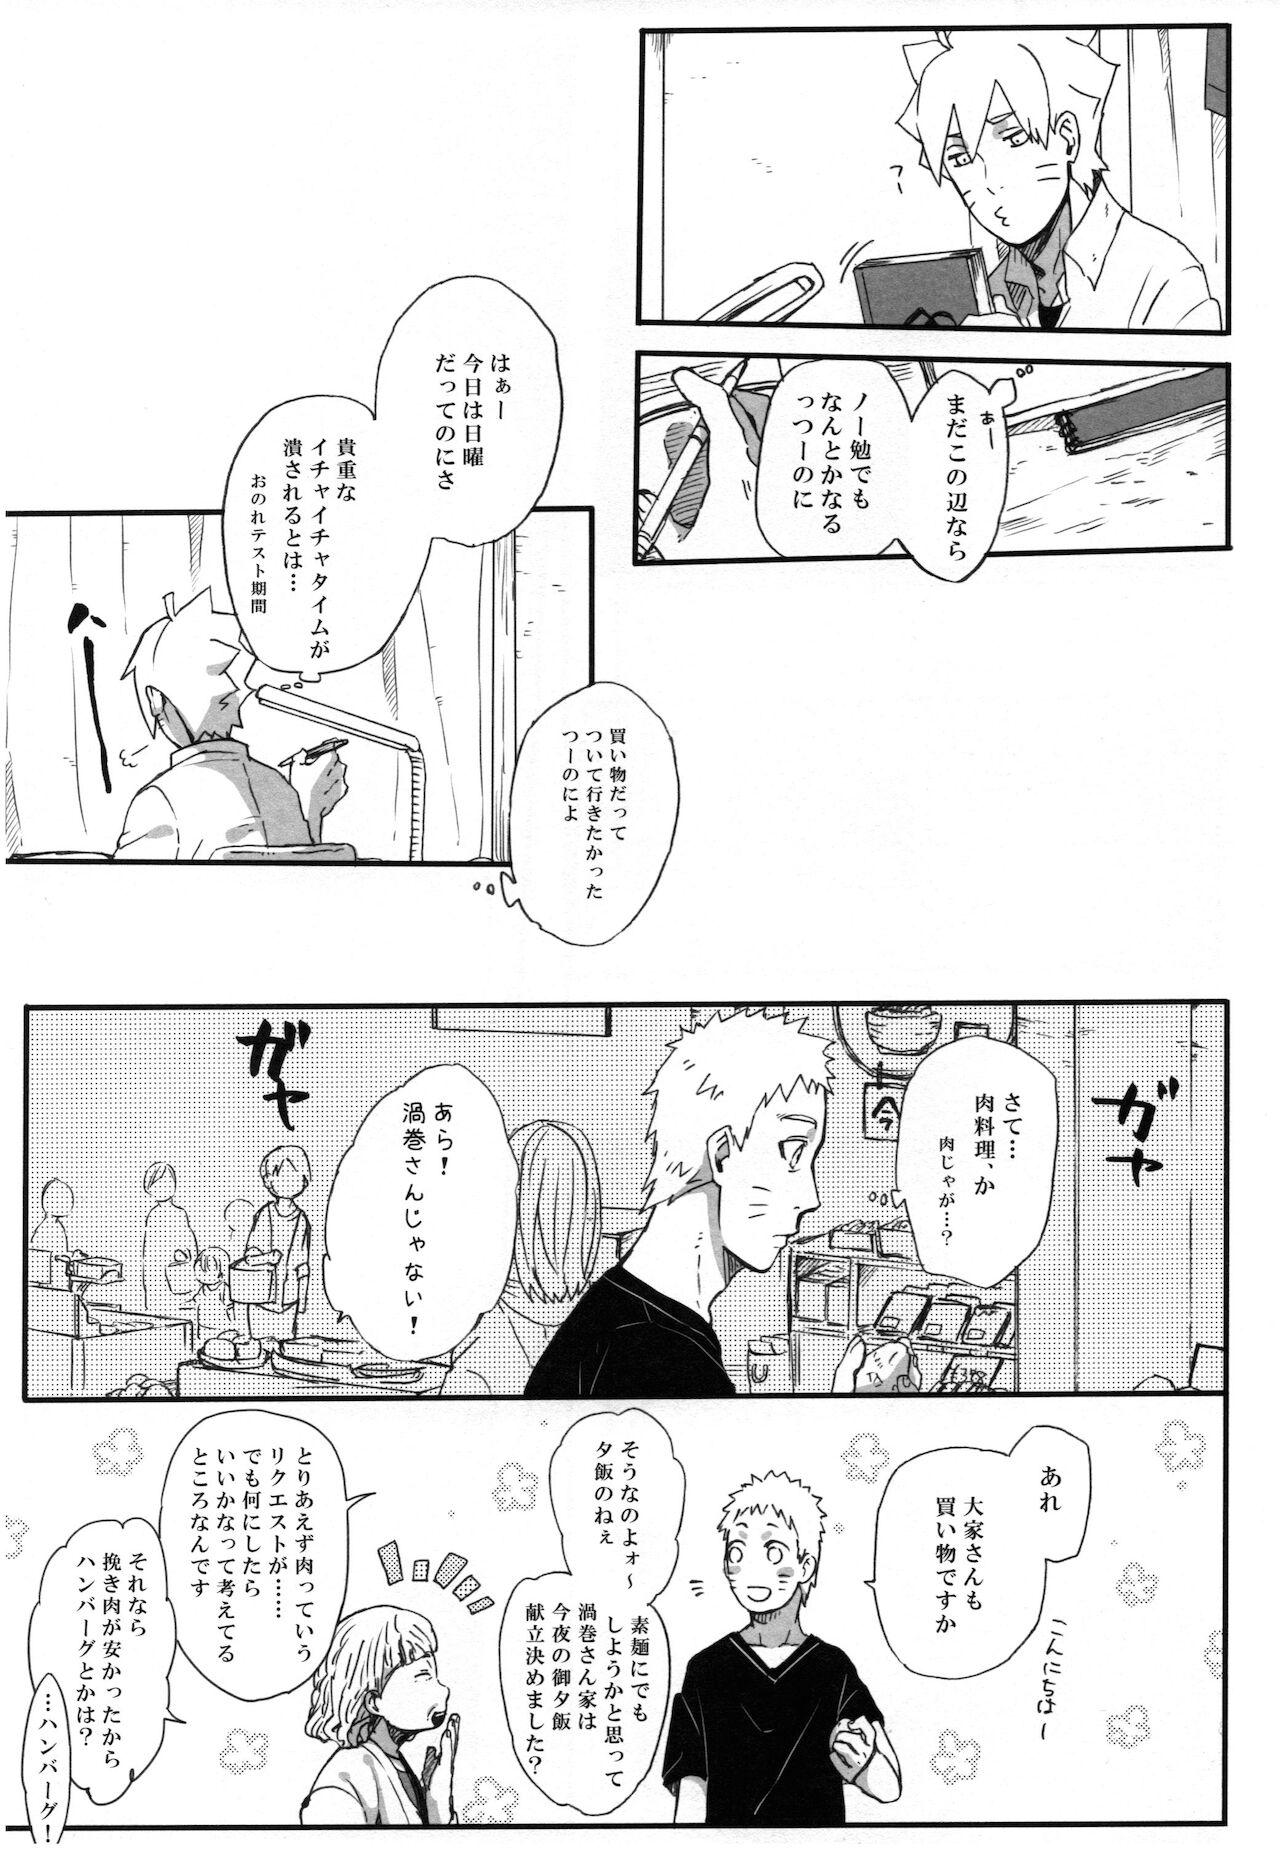 Putinha Getsuyou wa itsumo chikoku sunzen - Naruto Passivo - Page 6